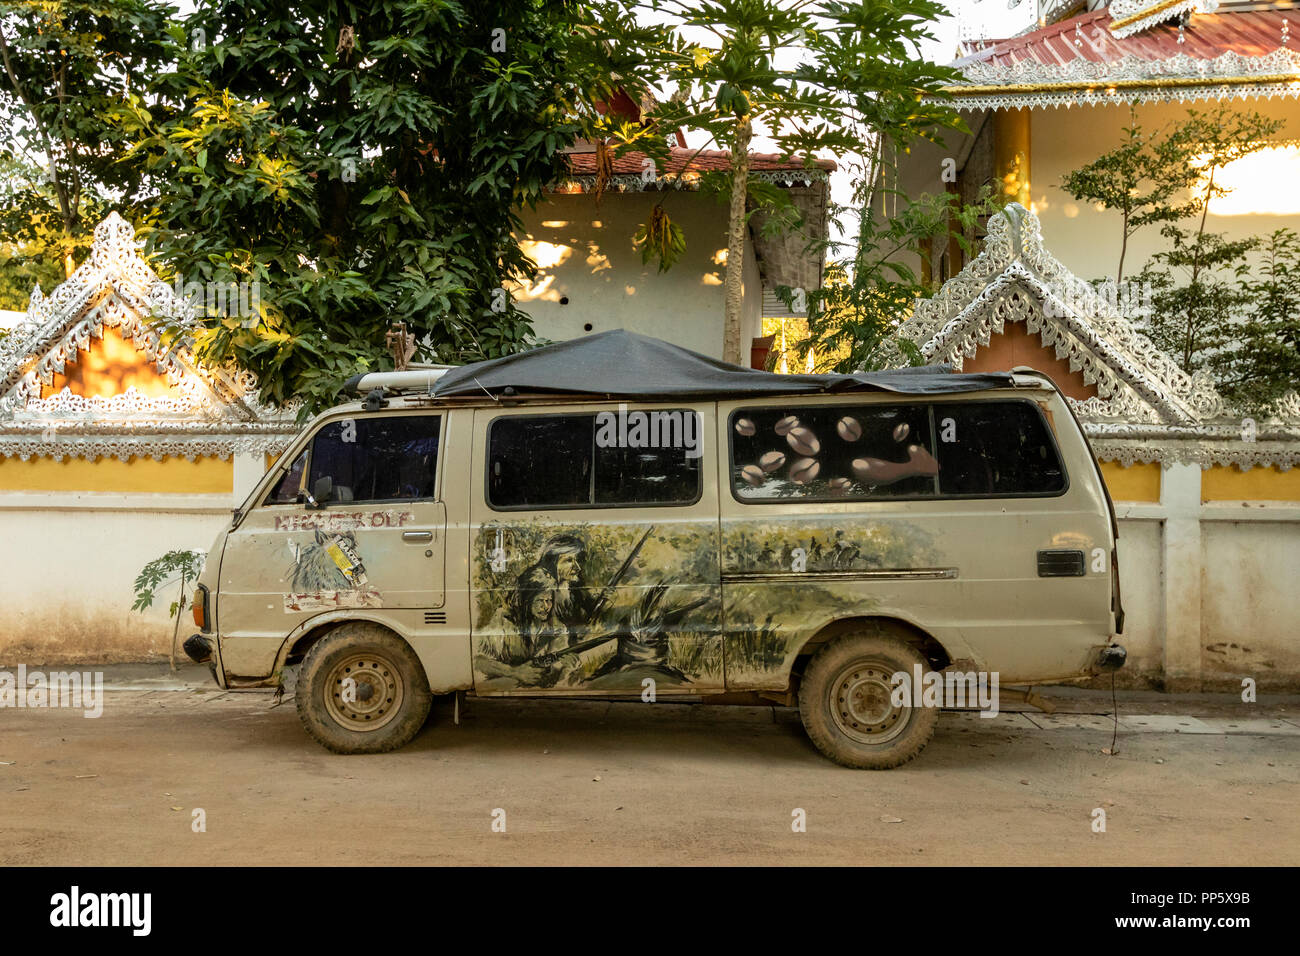 Hippie van mit Cowboys und Indianer Dekoration in Pai, Thailand  Stockfotografie - Alamy